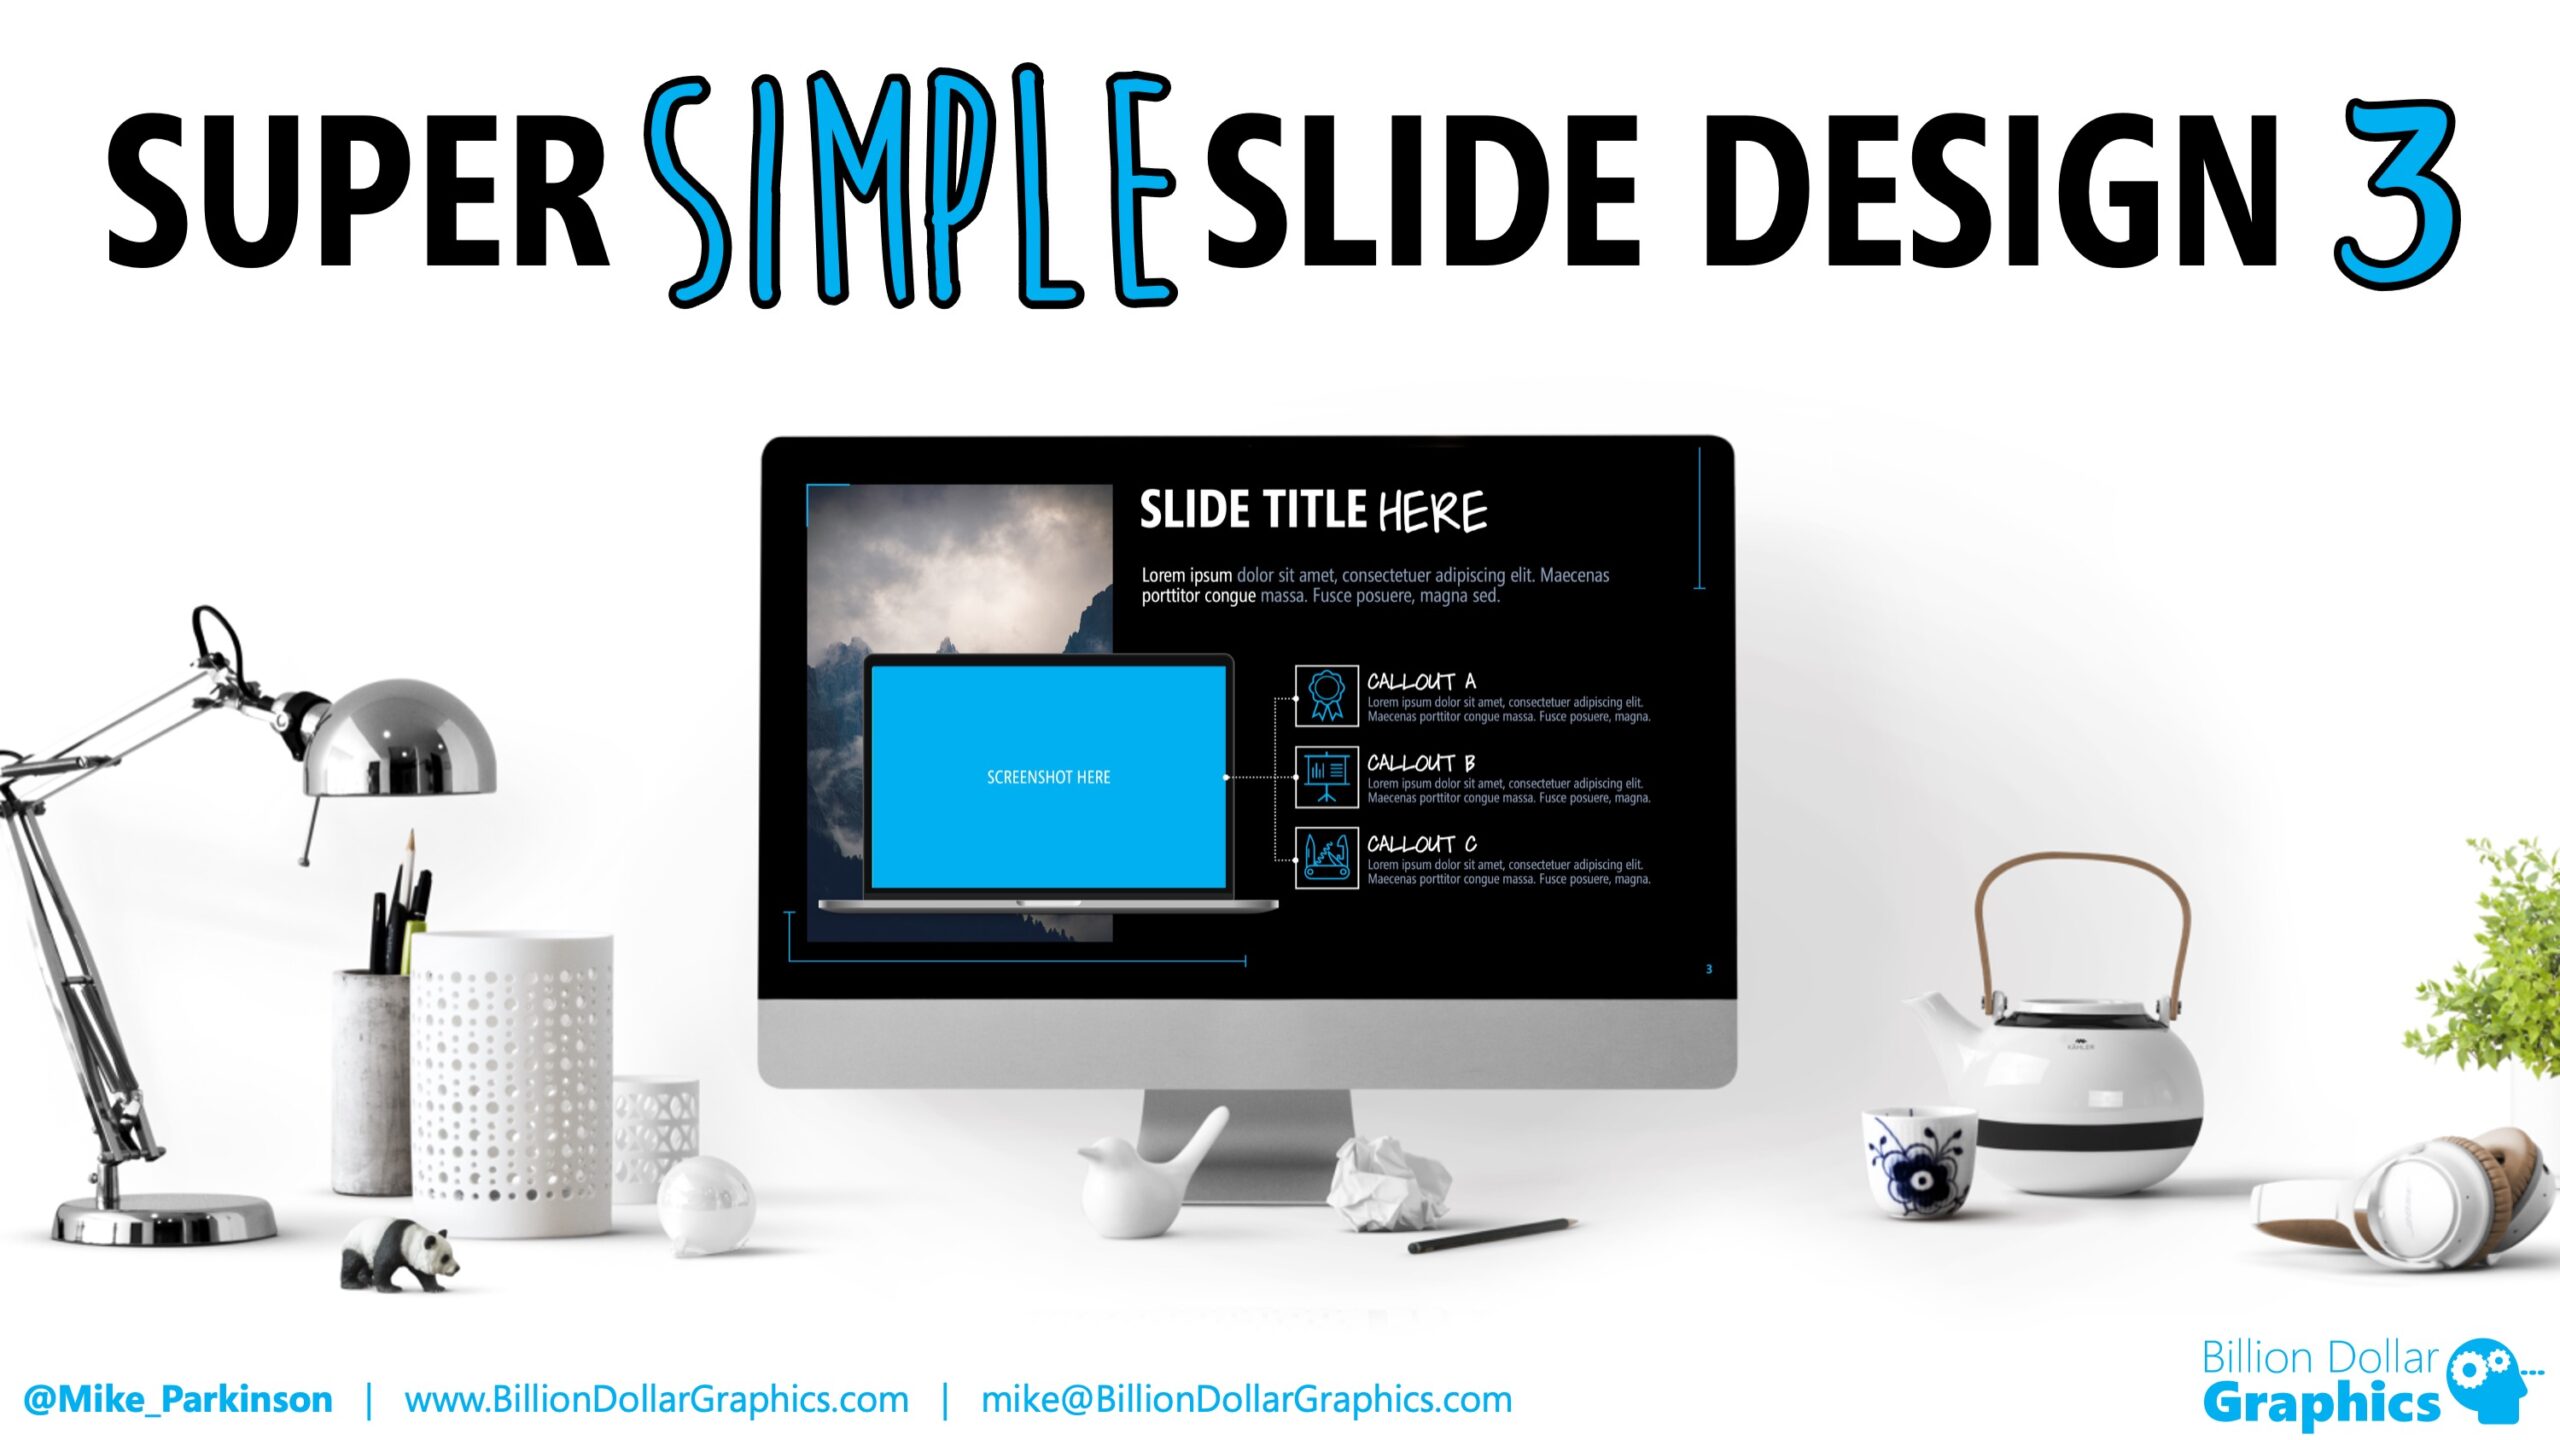 Super SimpleSlide Design 3 Title Slide